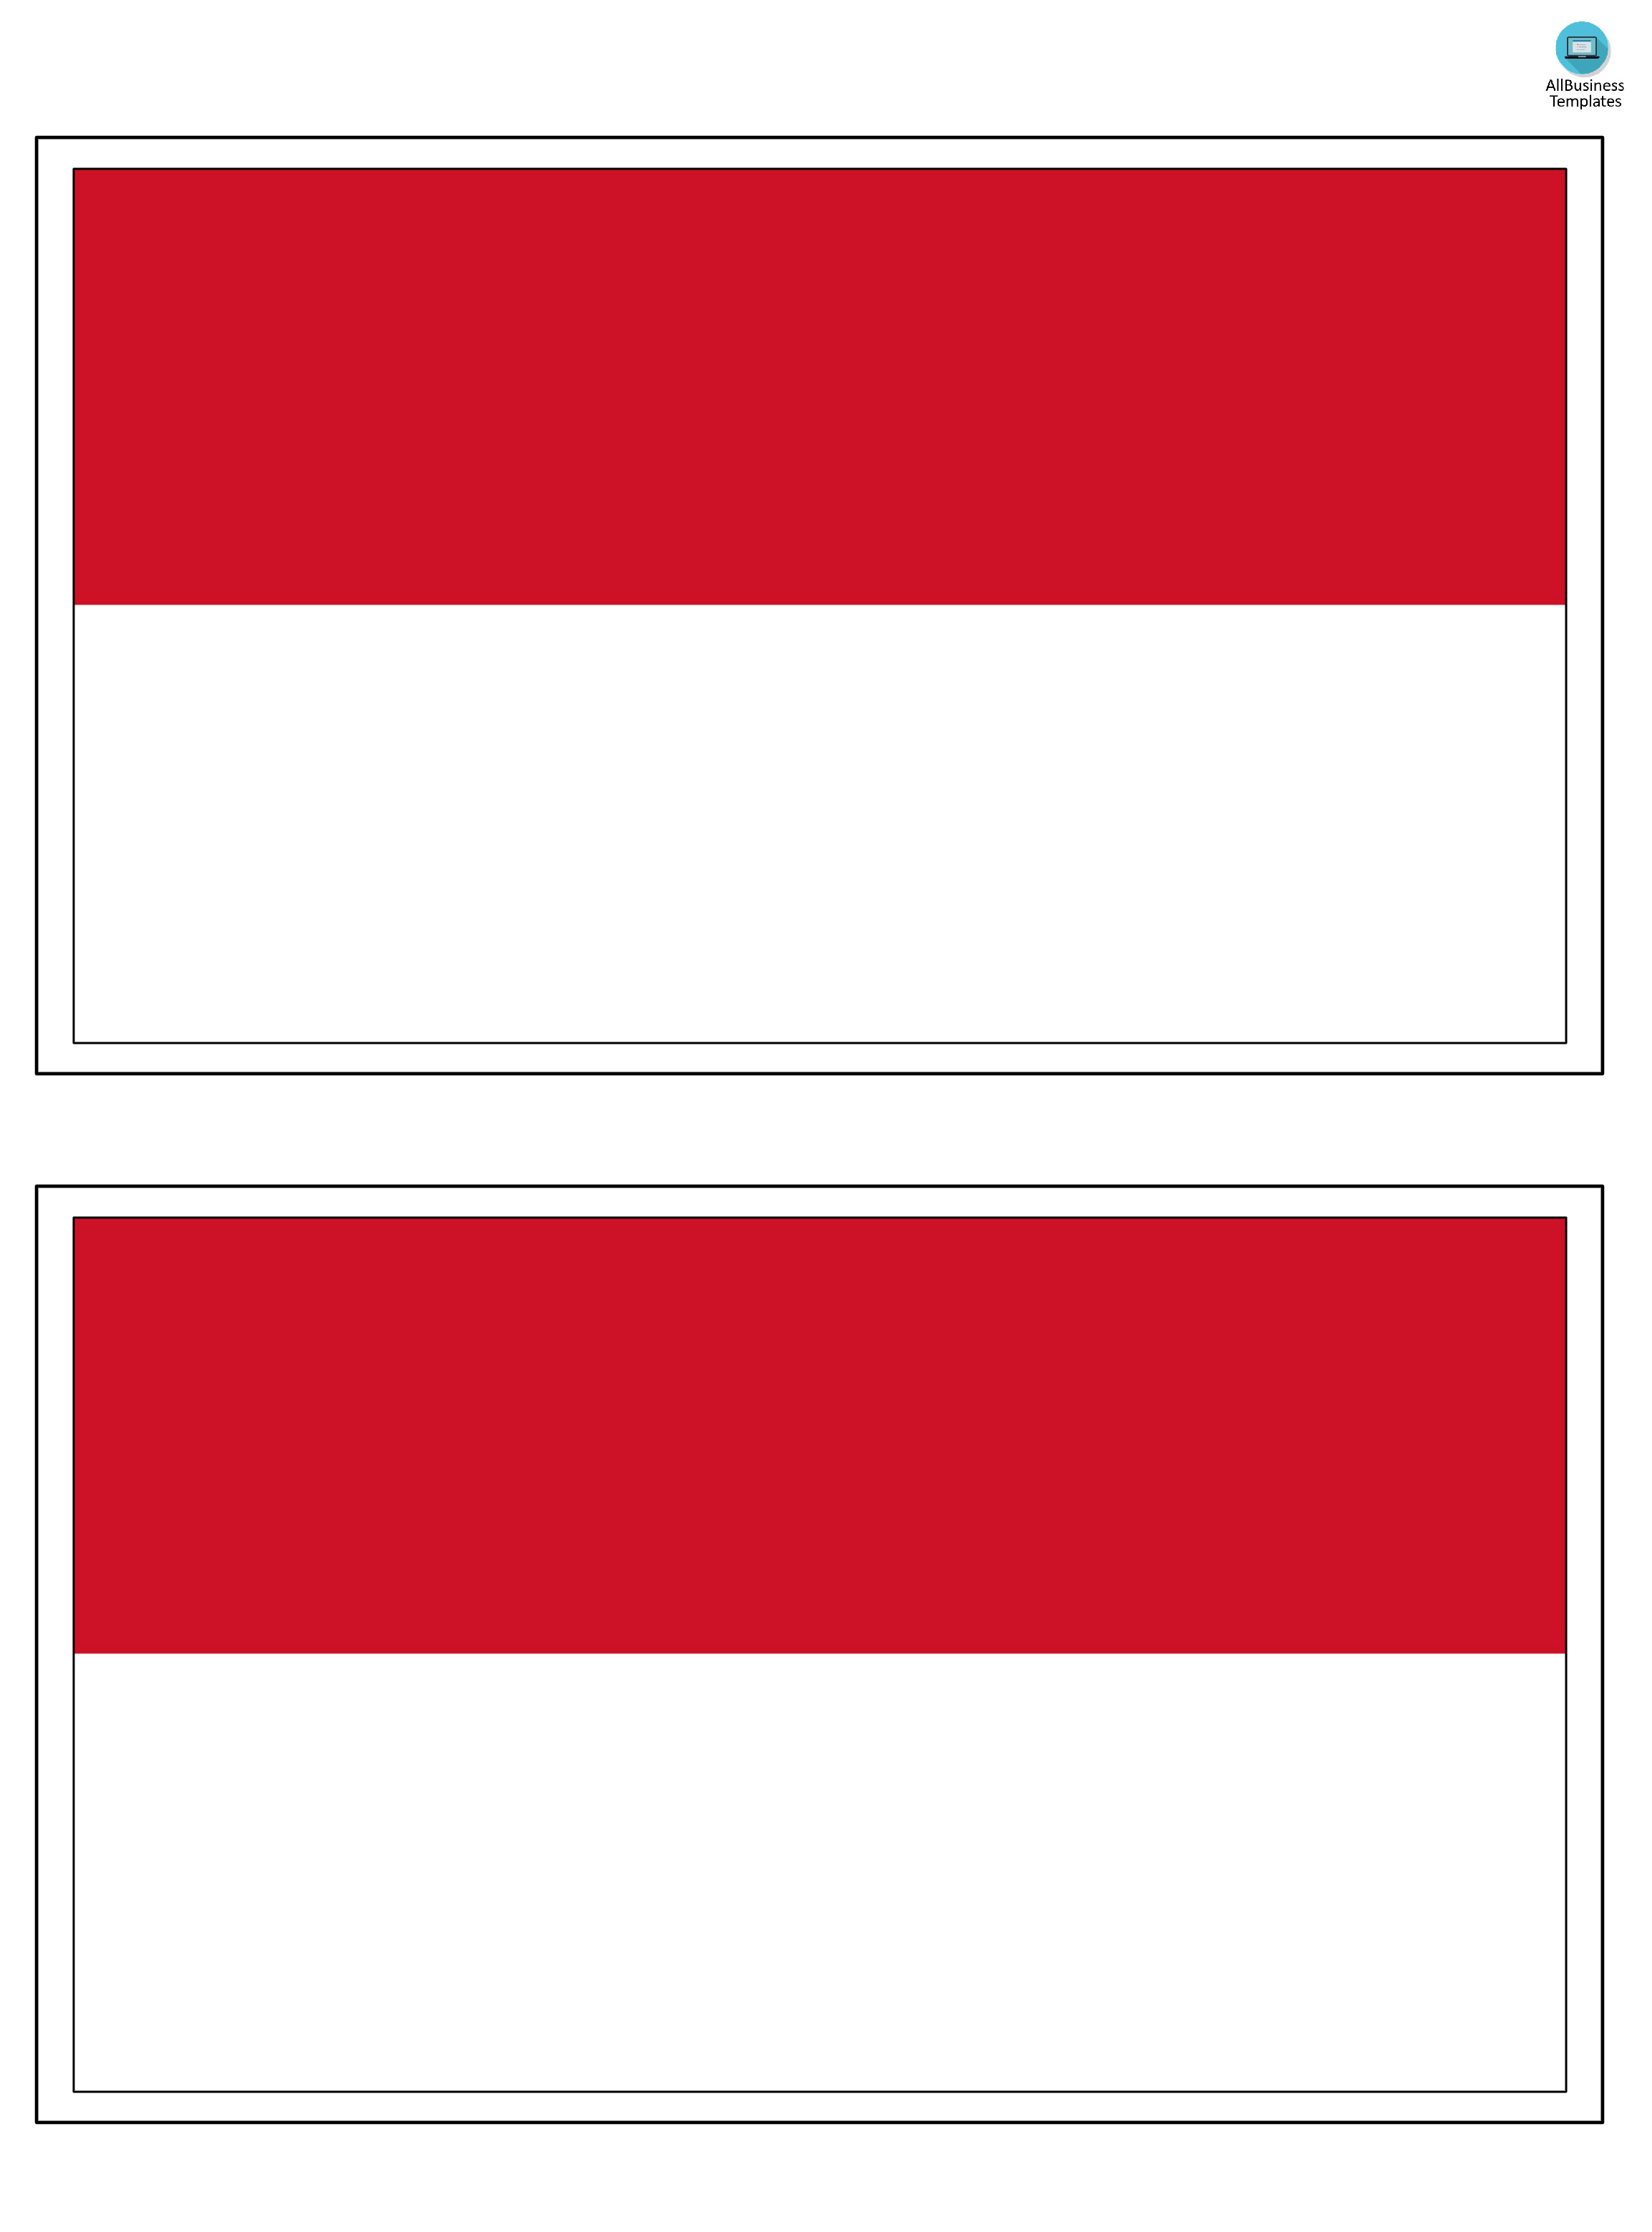 Indonesia printable flag main image